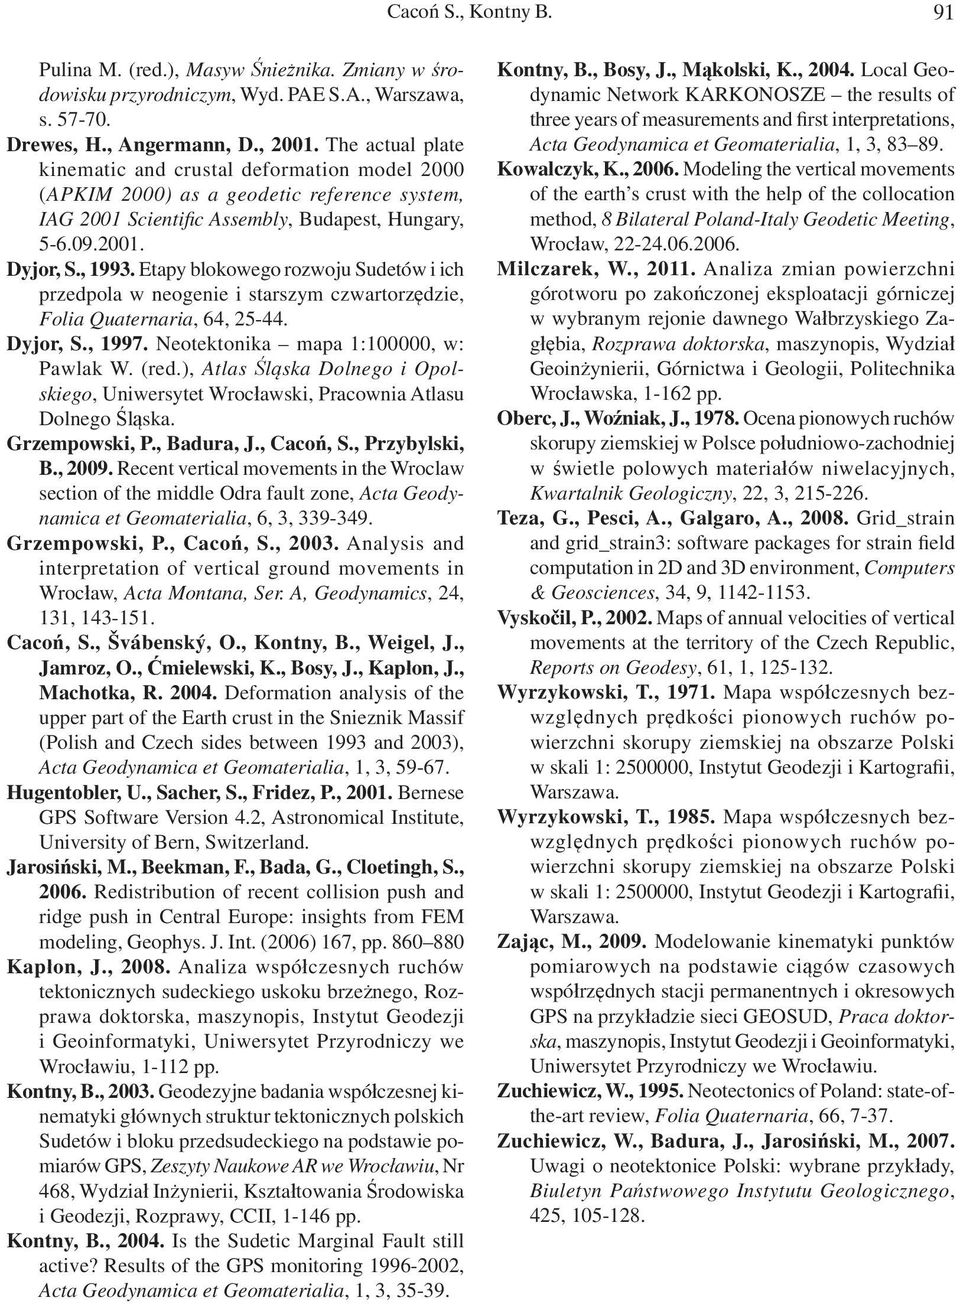 Etapy blokowego rozwoju Sudetów i ich przedpola w neogenie i starszym czwartorzędzie, Folia Quaternaria, 64, 25-44. Dyjor, S., 1997. Neotektonika mapa 1:100000, w: Pawlak W. (red.